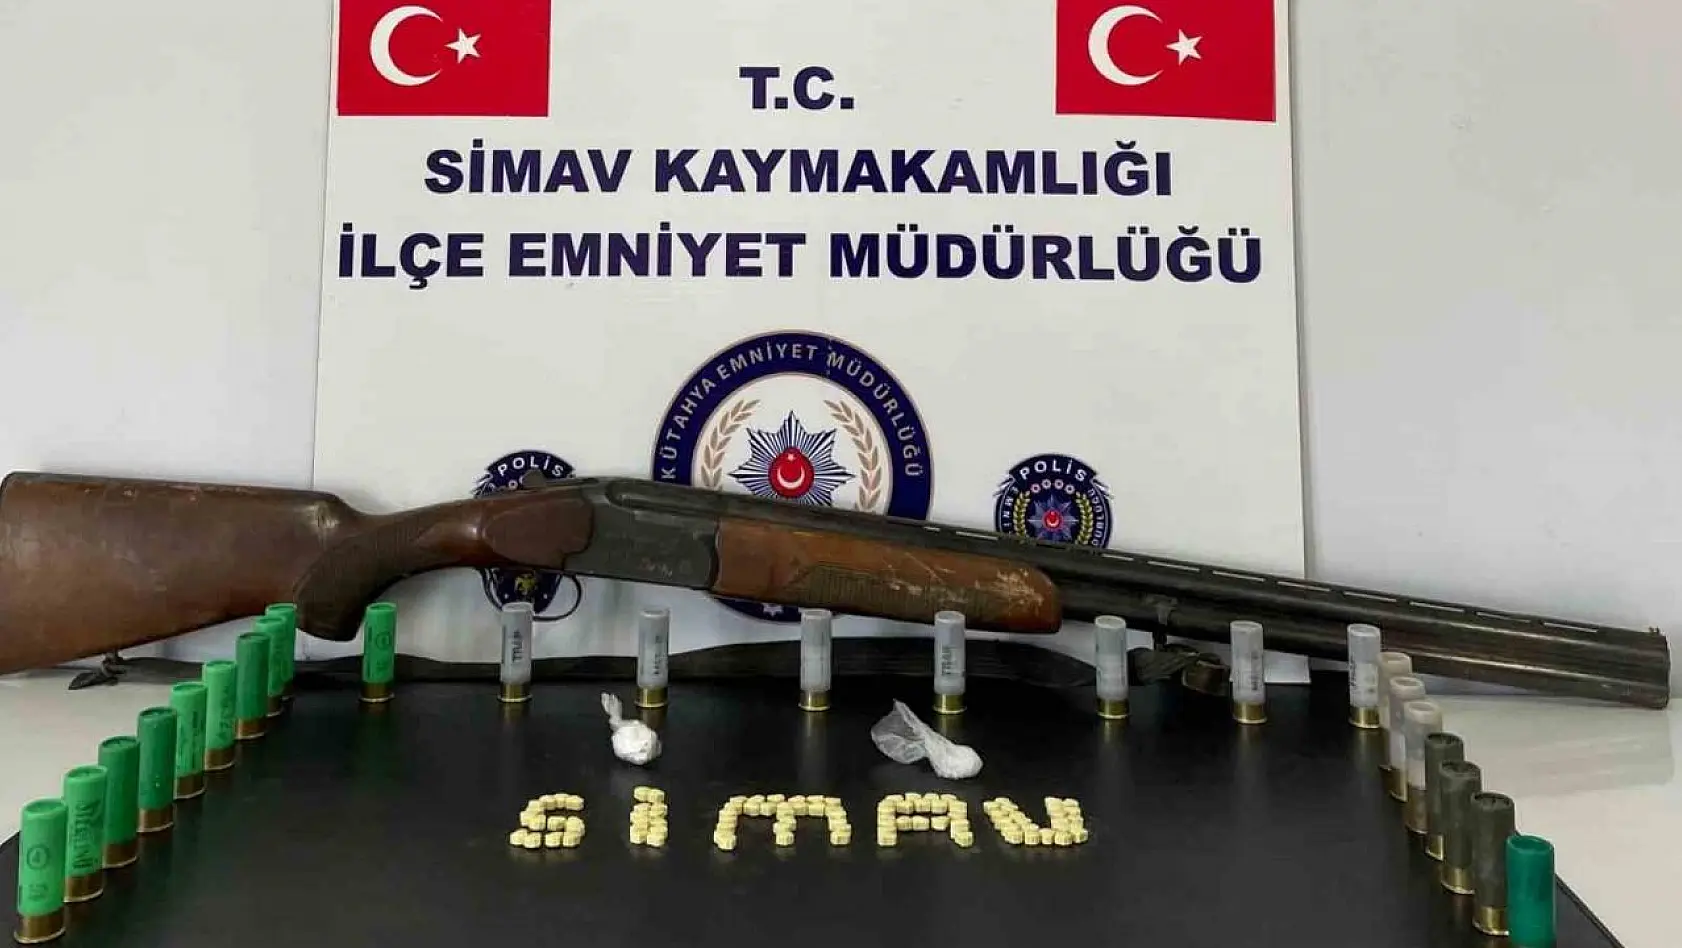 Simav'da araçlarında ruhsatsız av tüfeği ve uyuşturucu bulunan 3 kişiden 2'si tutuklandı